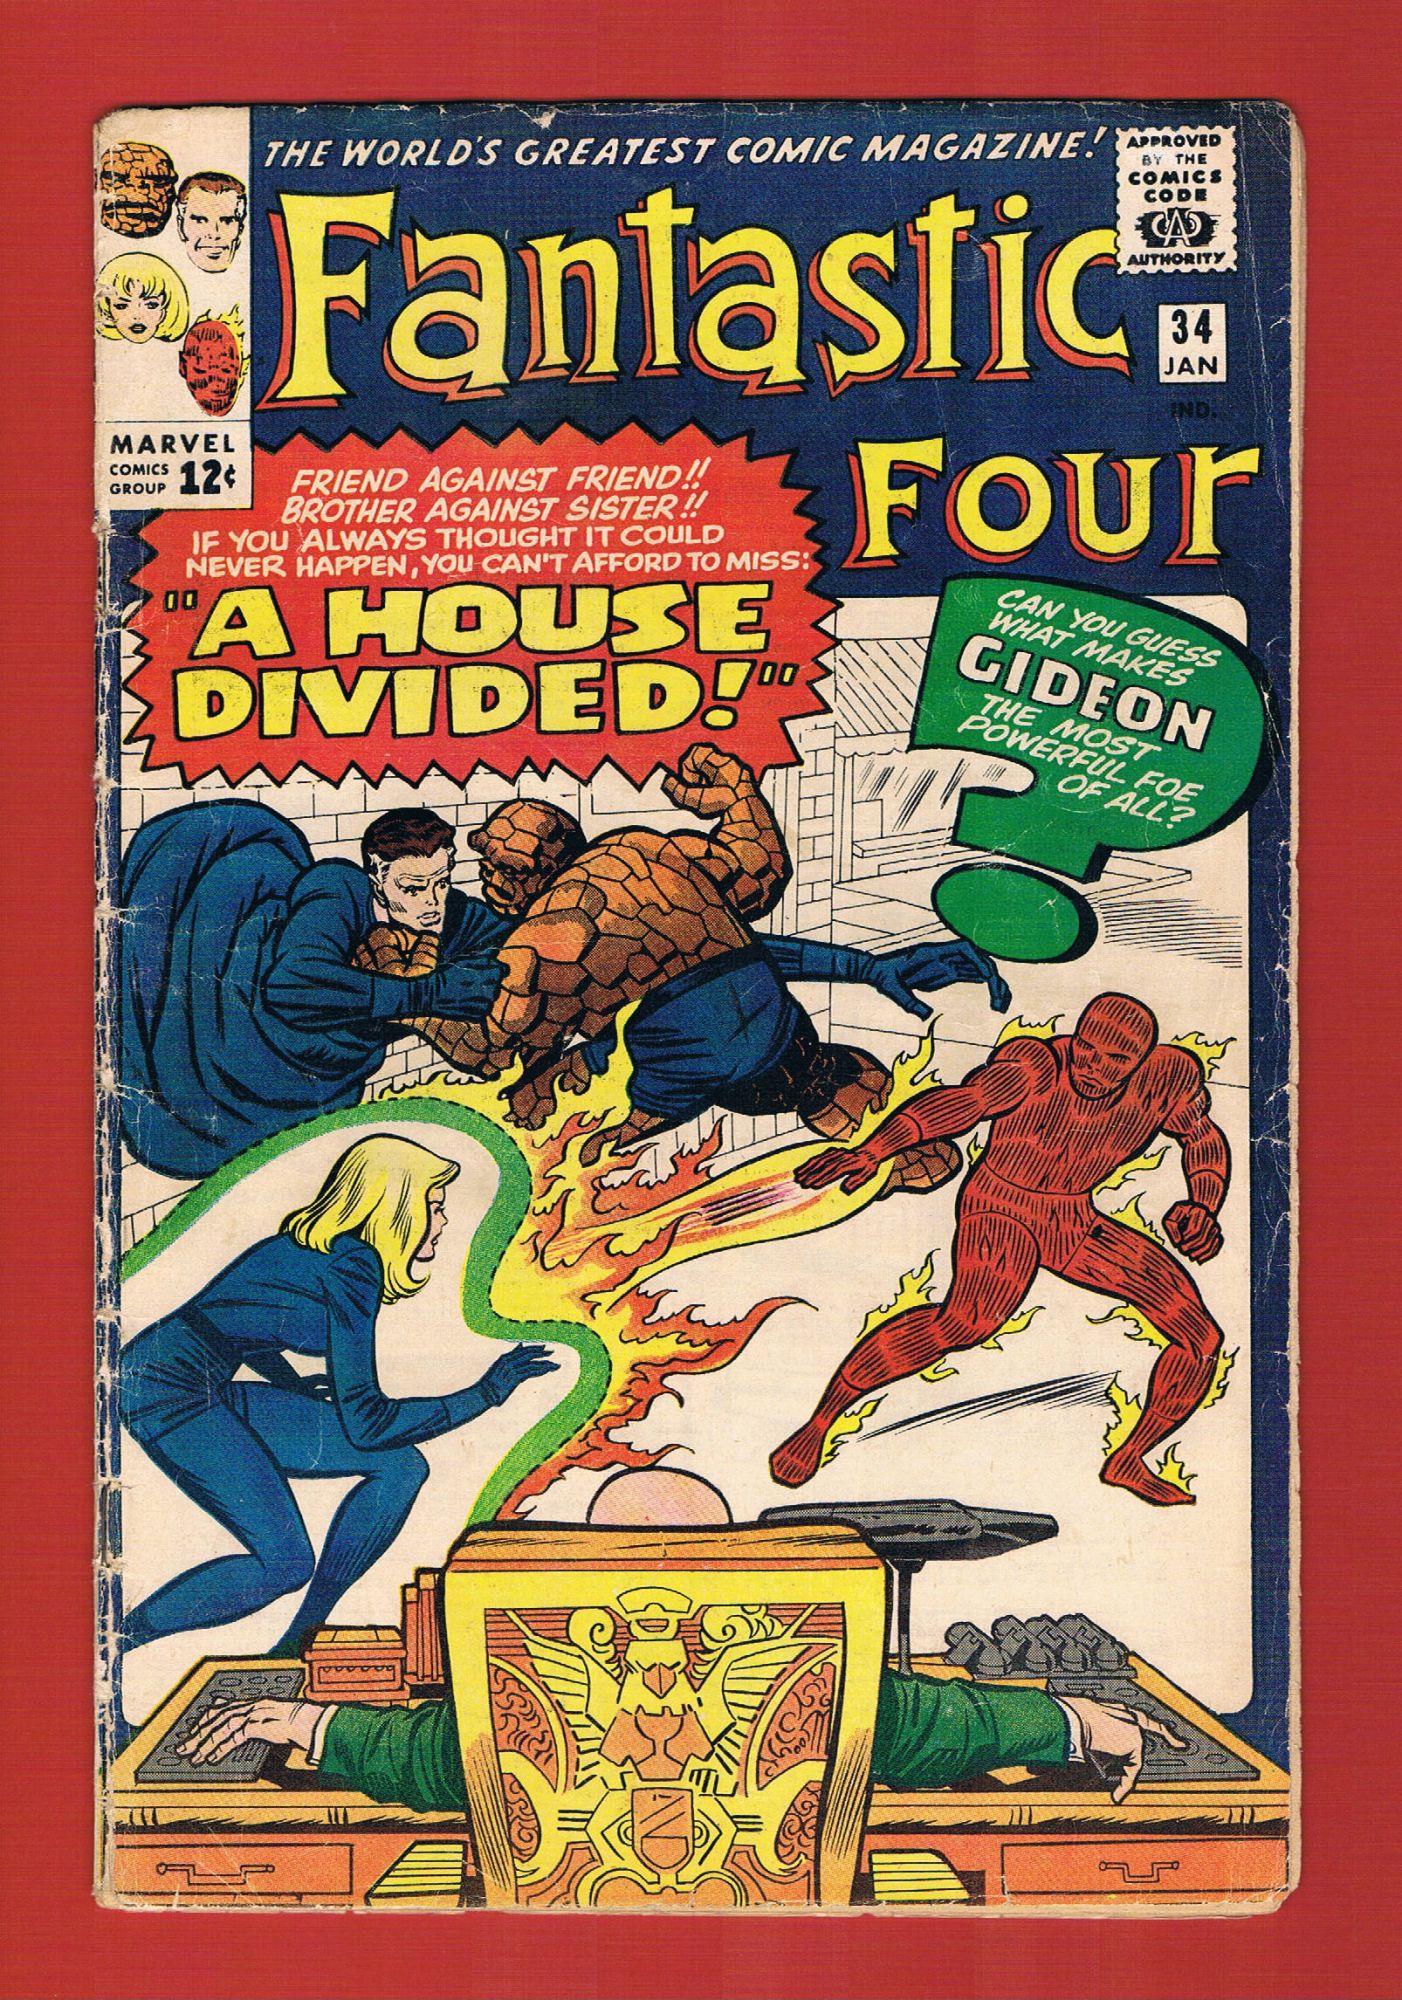 Fantastic Four #34, Jan 1965, 2.5 GD+